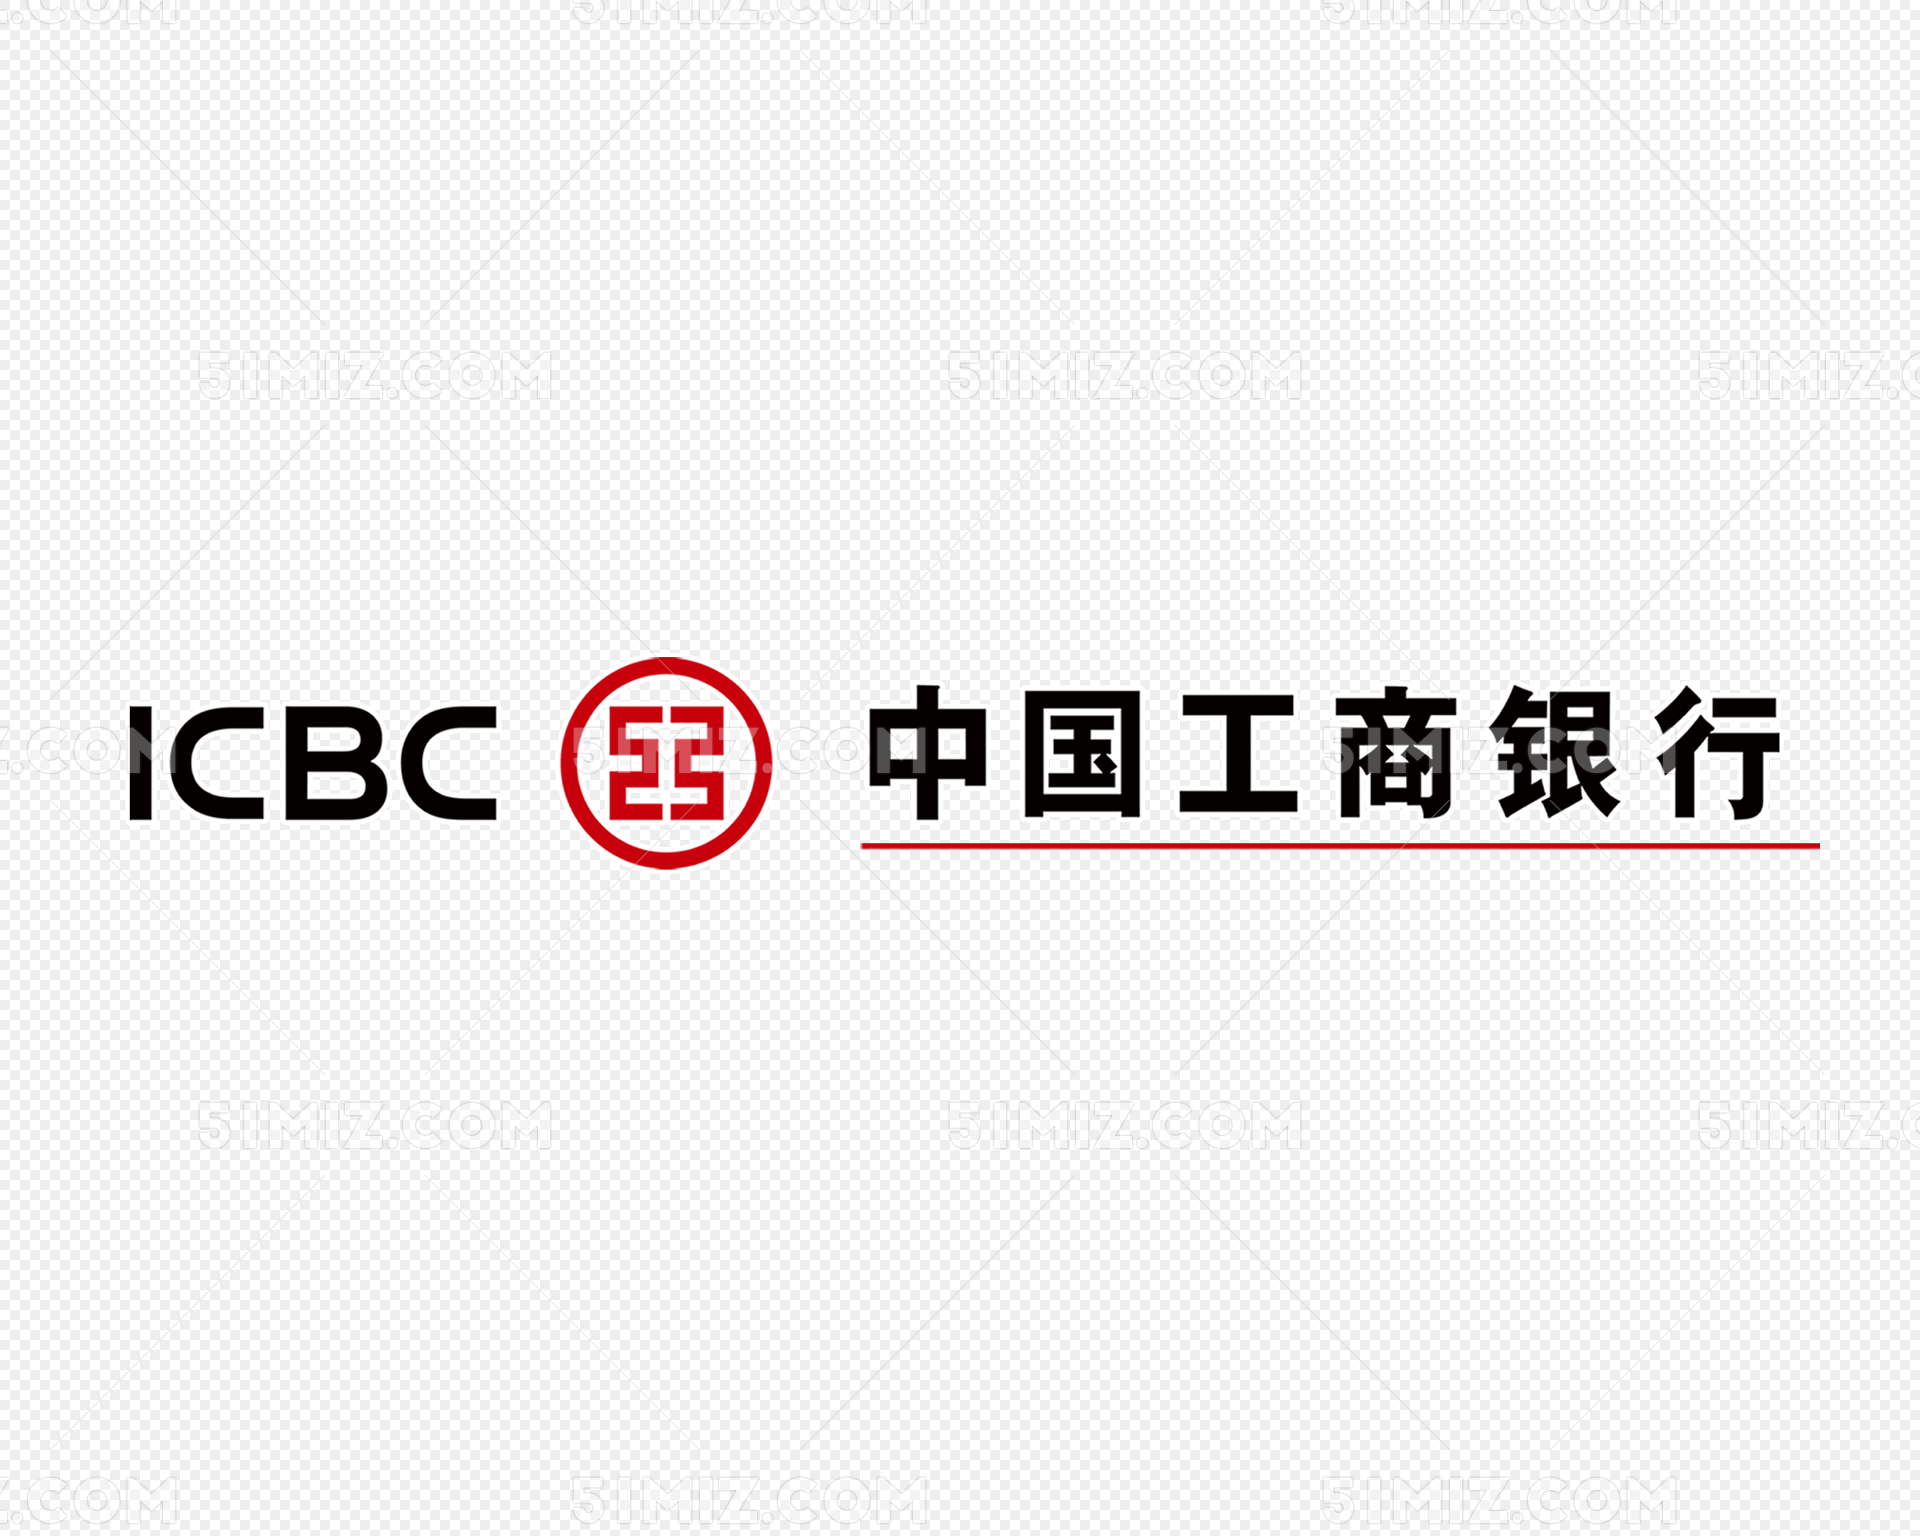 ICBC | Universal Beijing Resort